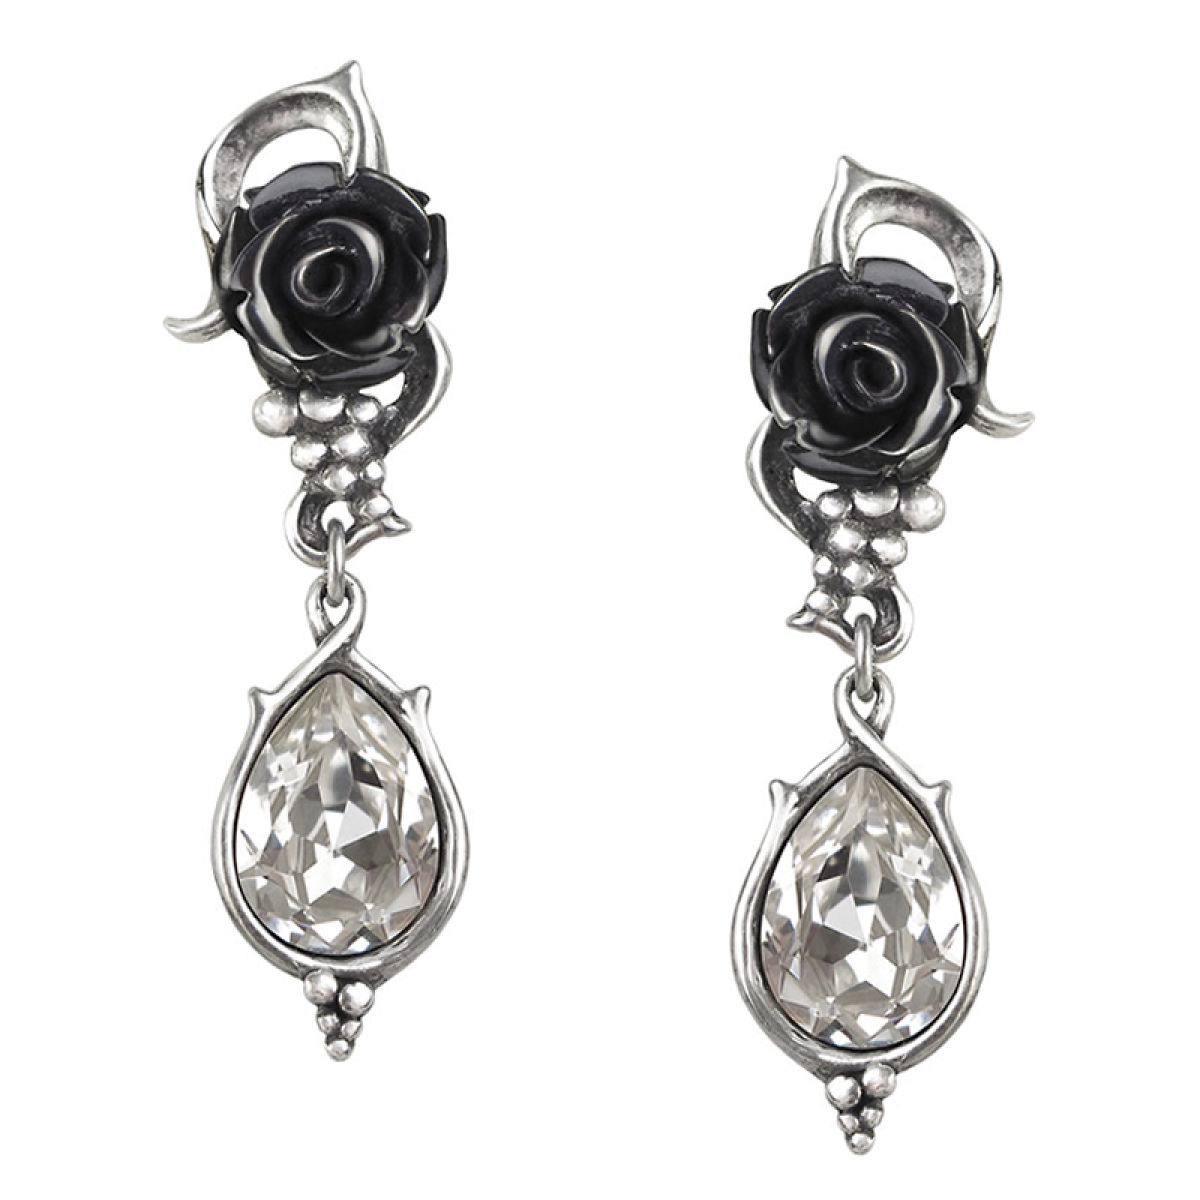 Bacchanal Rose Earrings steampunk buy now online